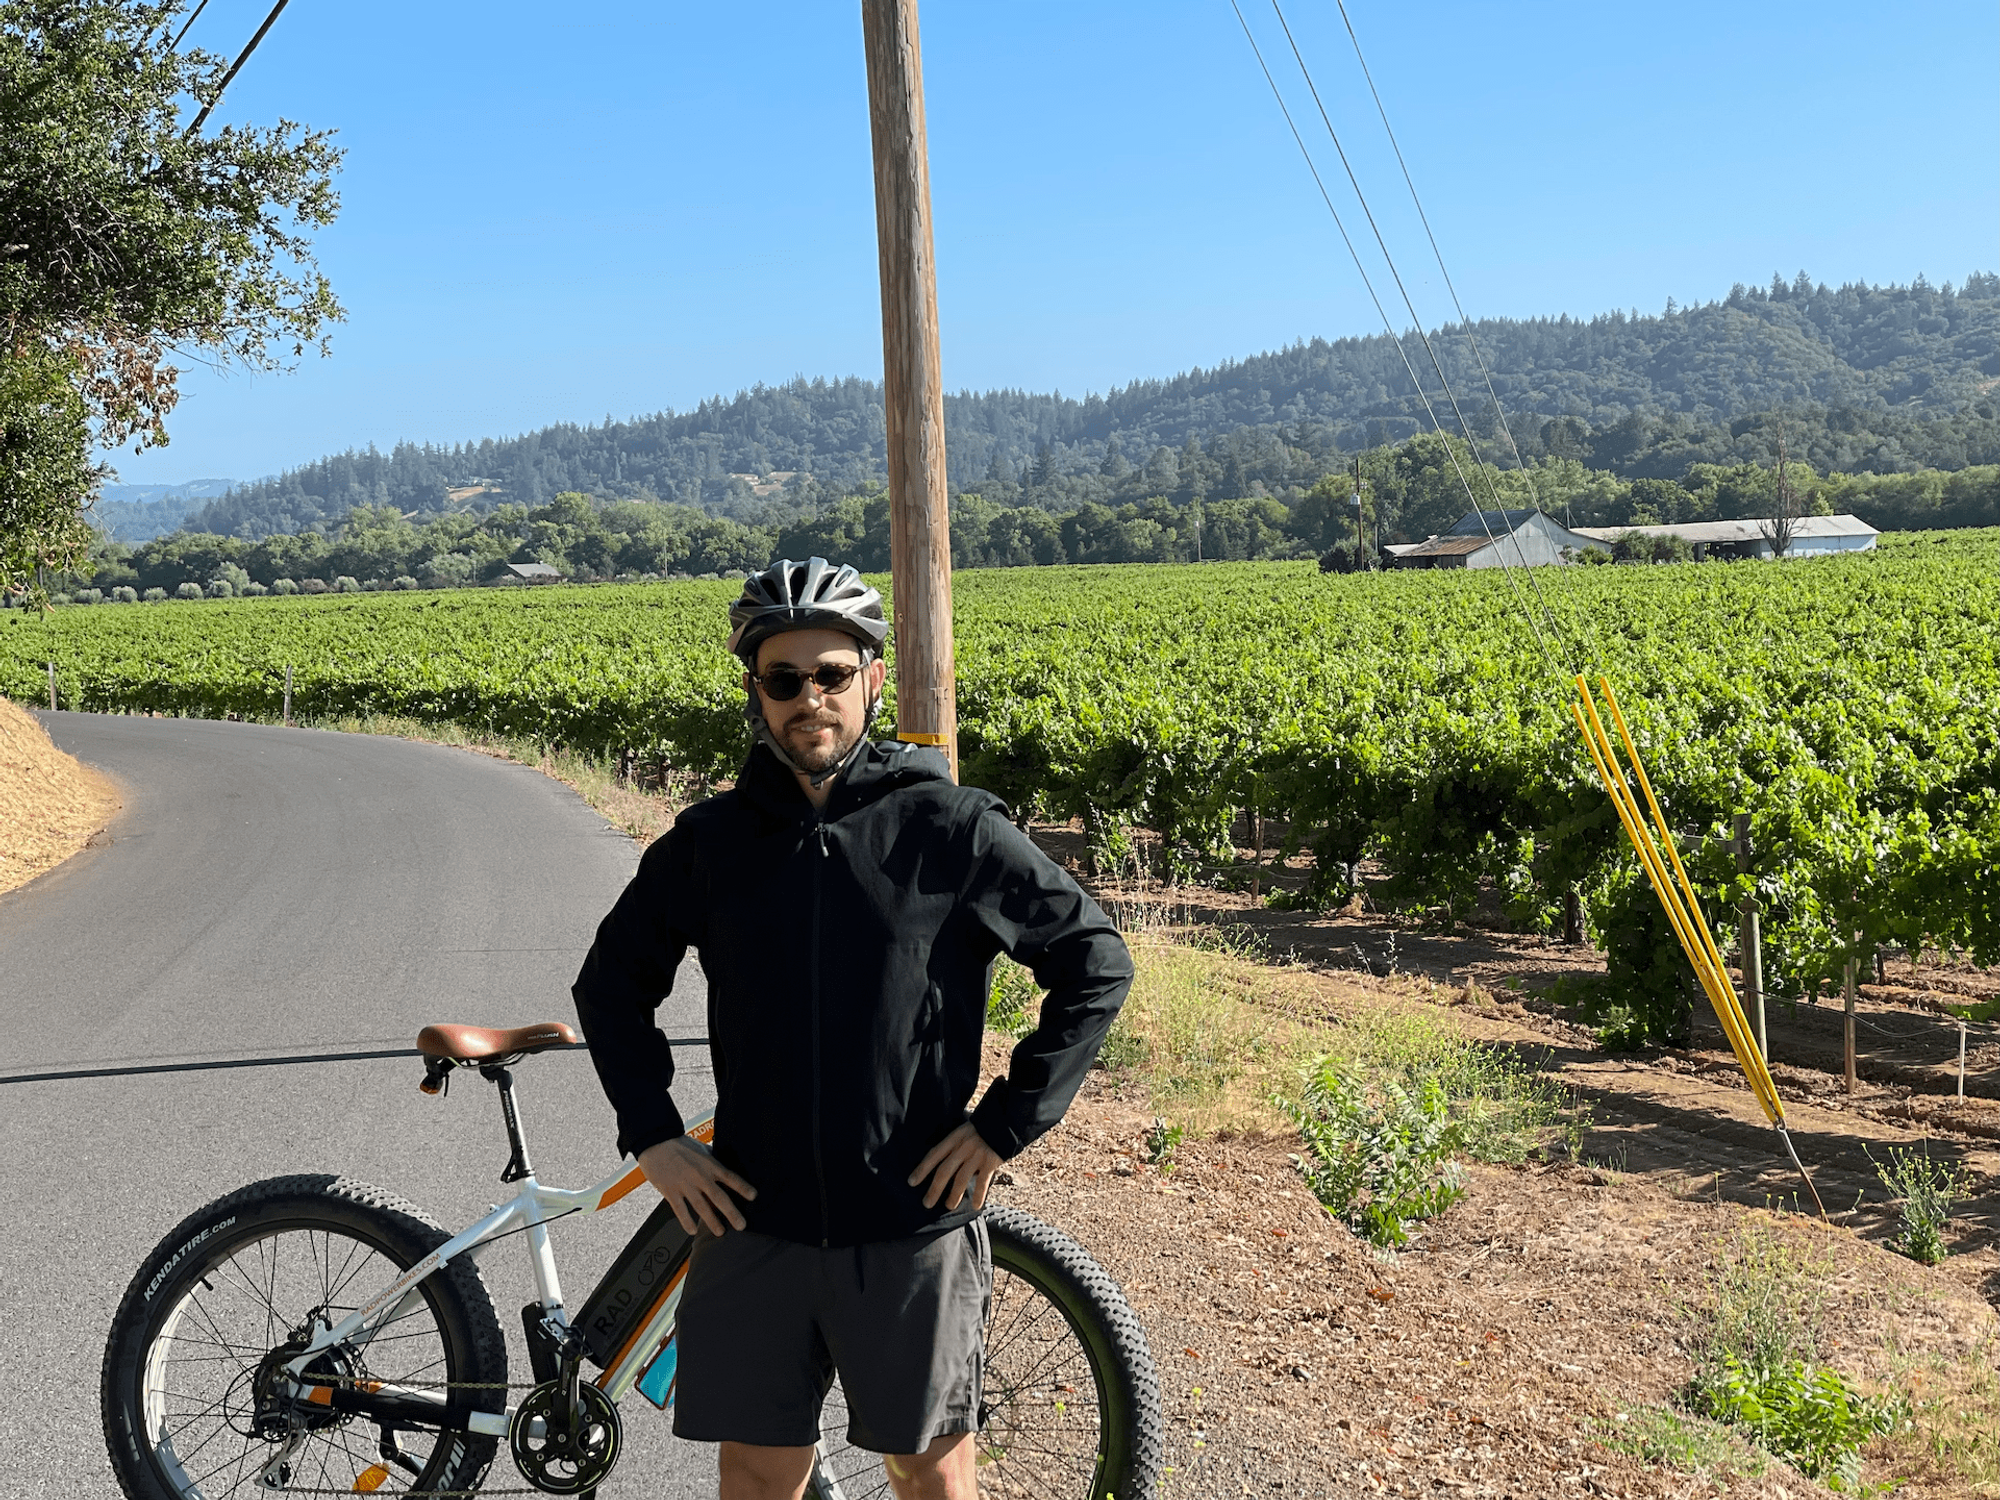 E-Biking around Dry Creek Valley in Sonoma, CA - Summer 2021